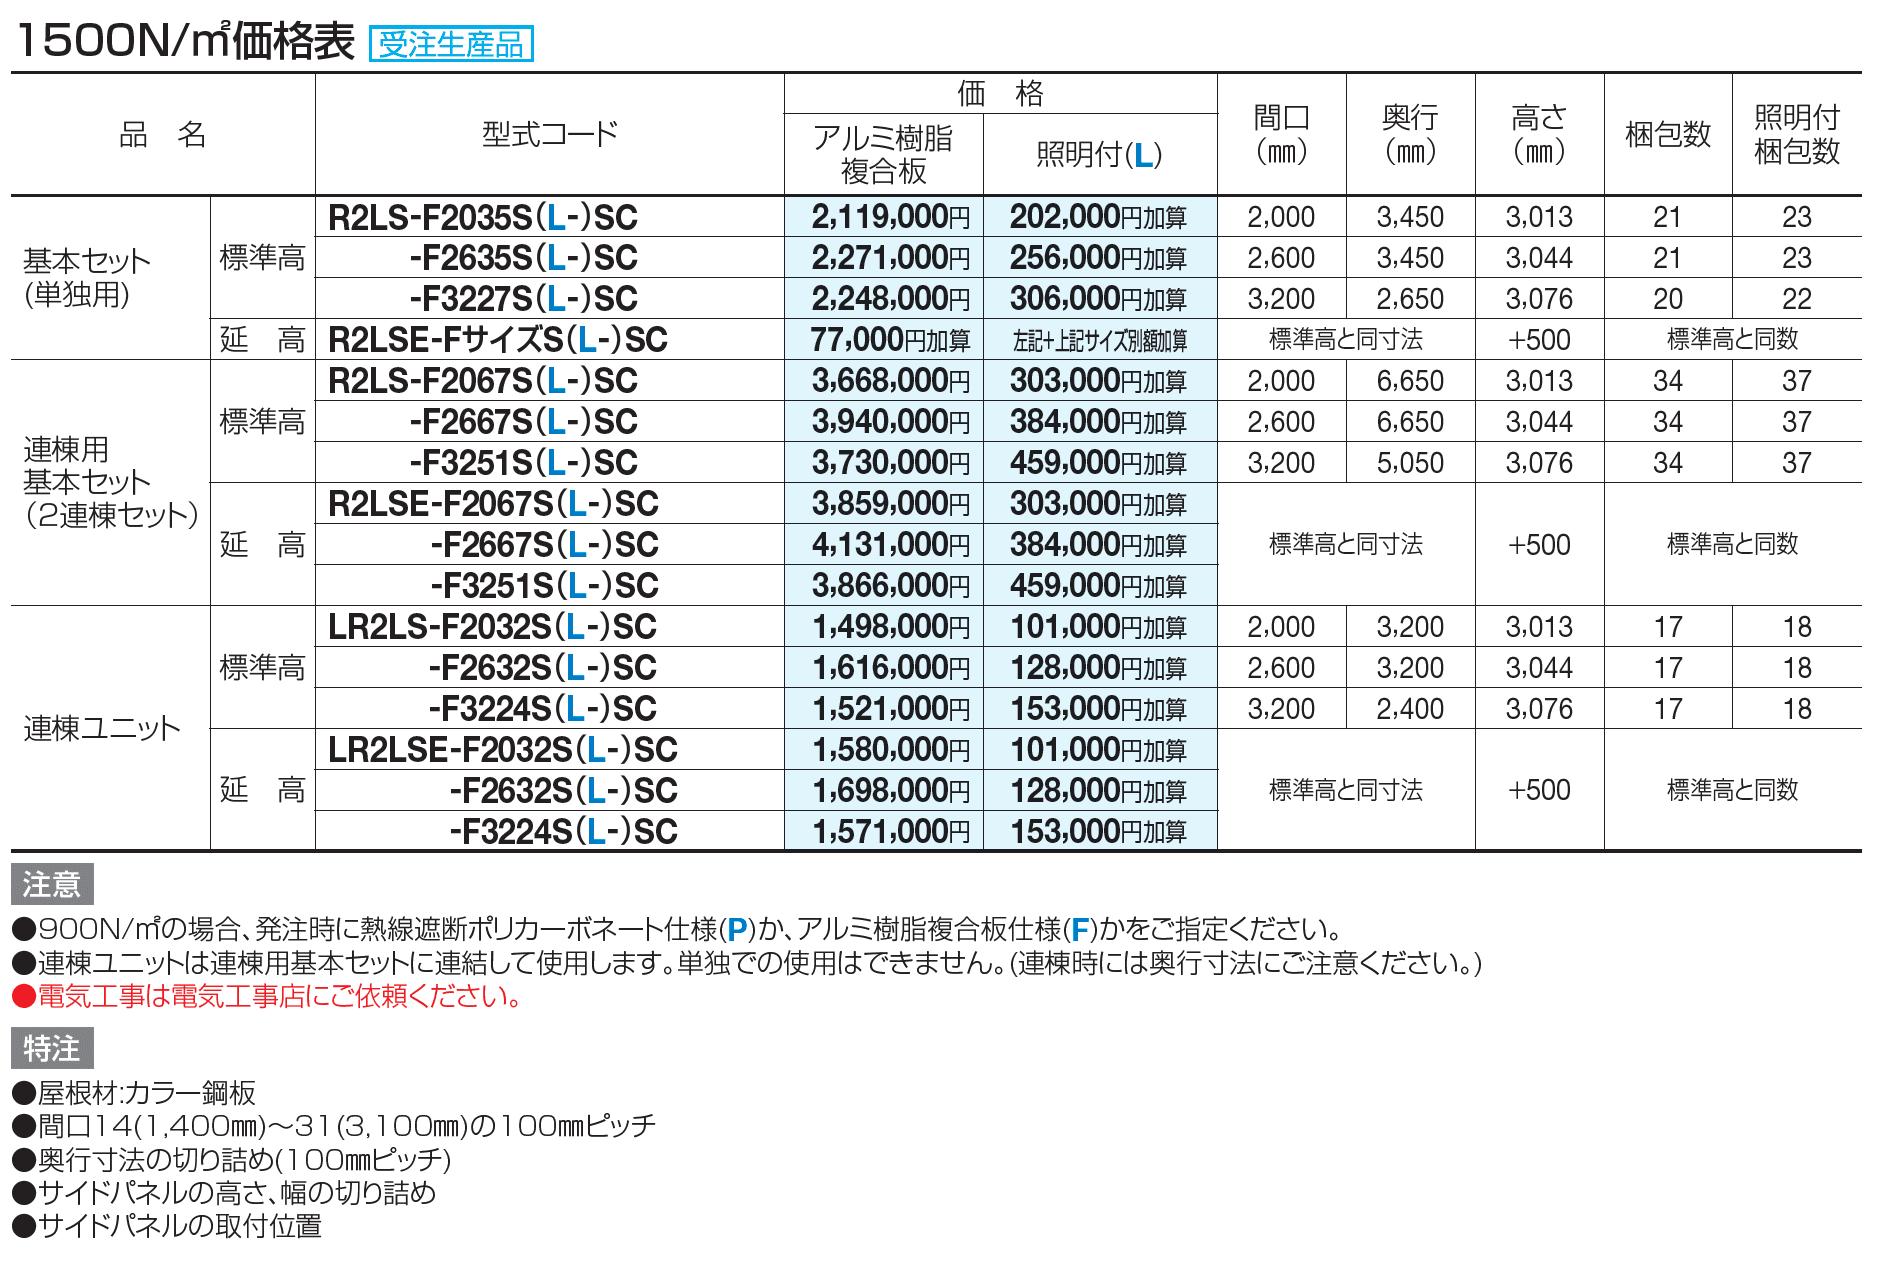 ライズルーフⅡ Lタイプ サイドパネル付(1500N/㎡)【2023年版】_価格_2